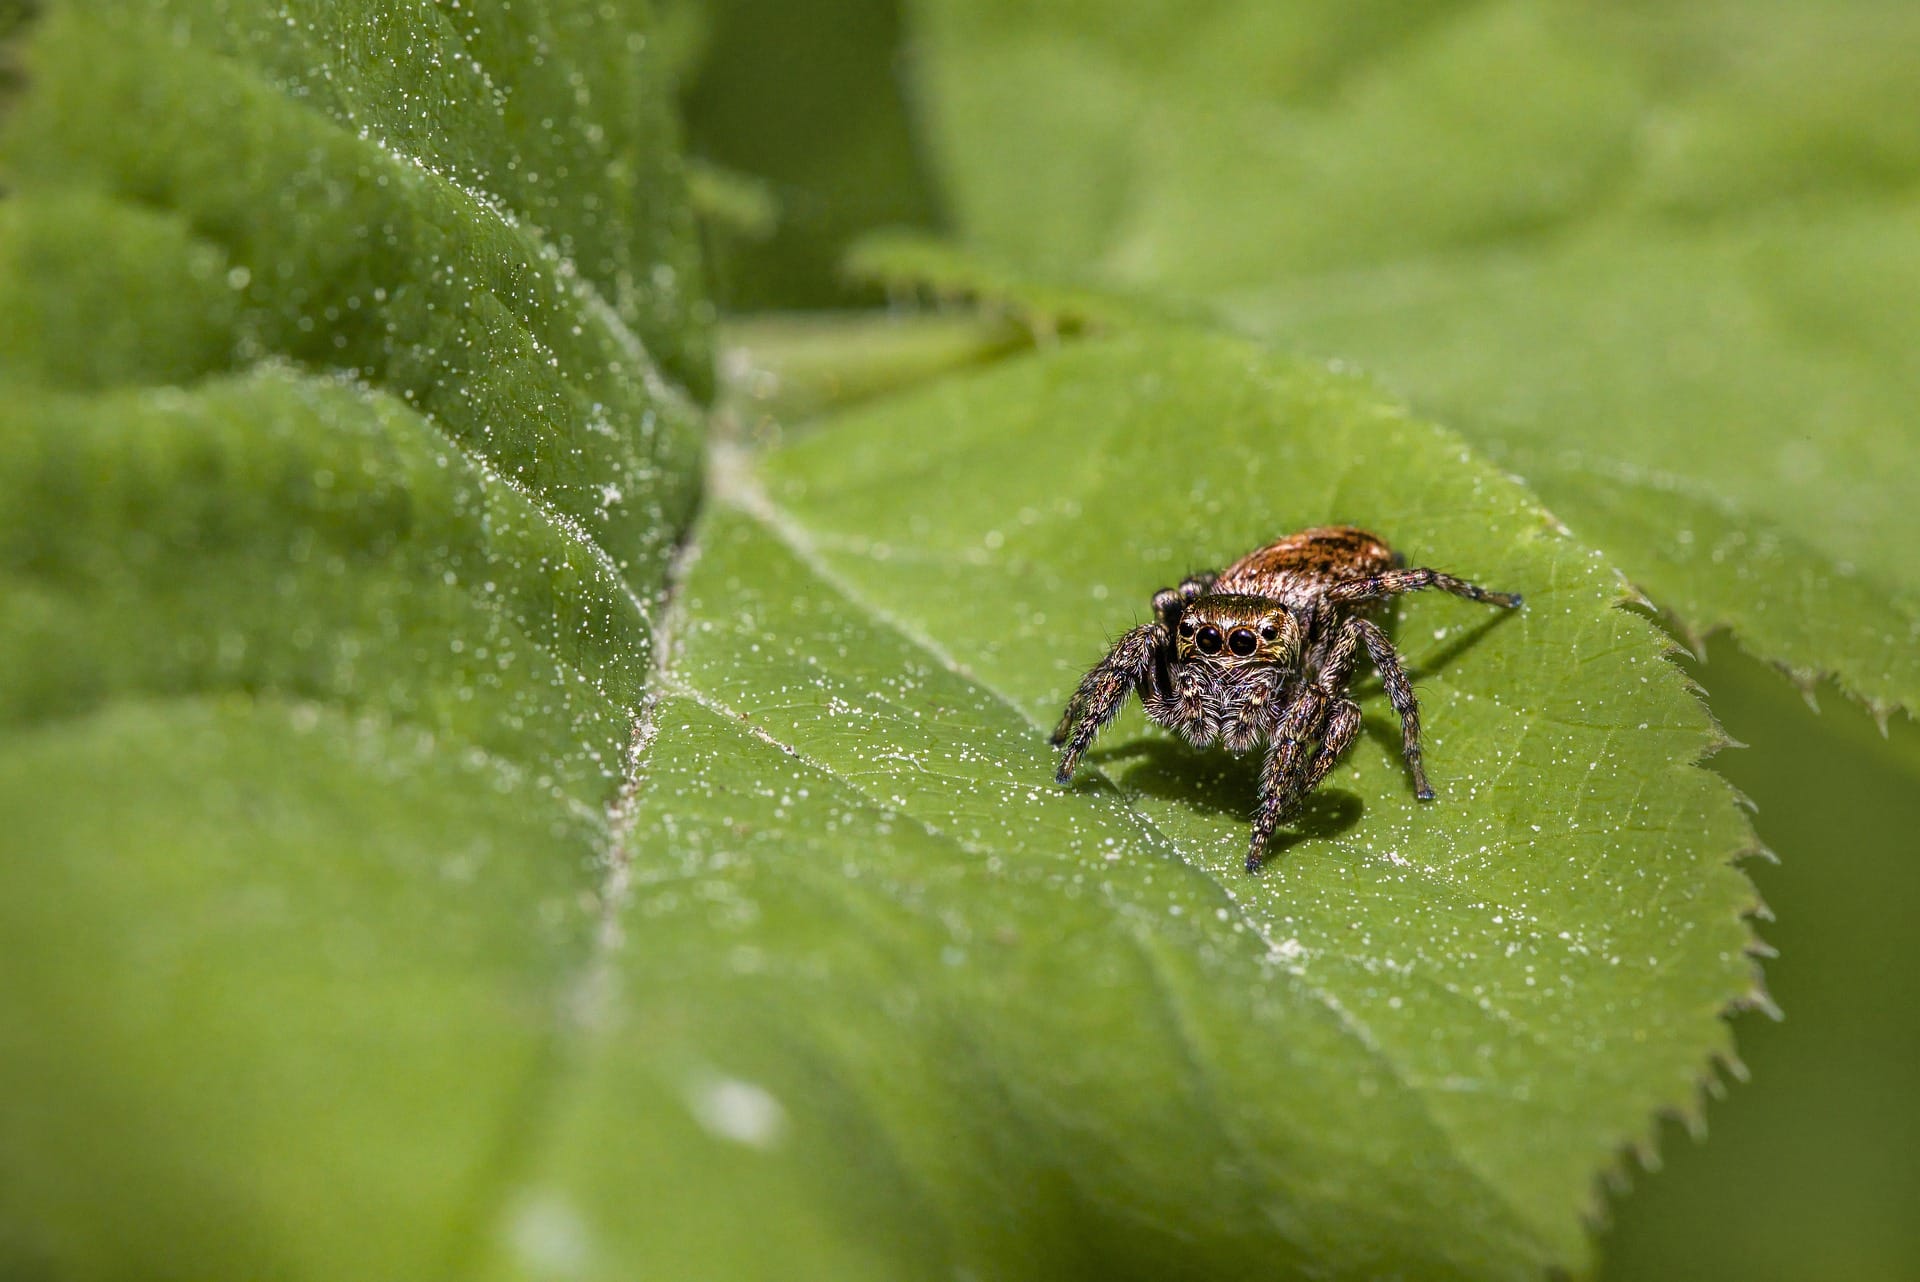 Spider sitting on a leaf